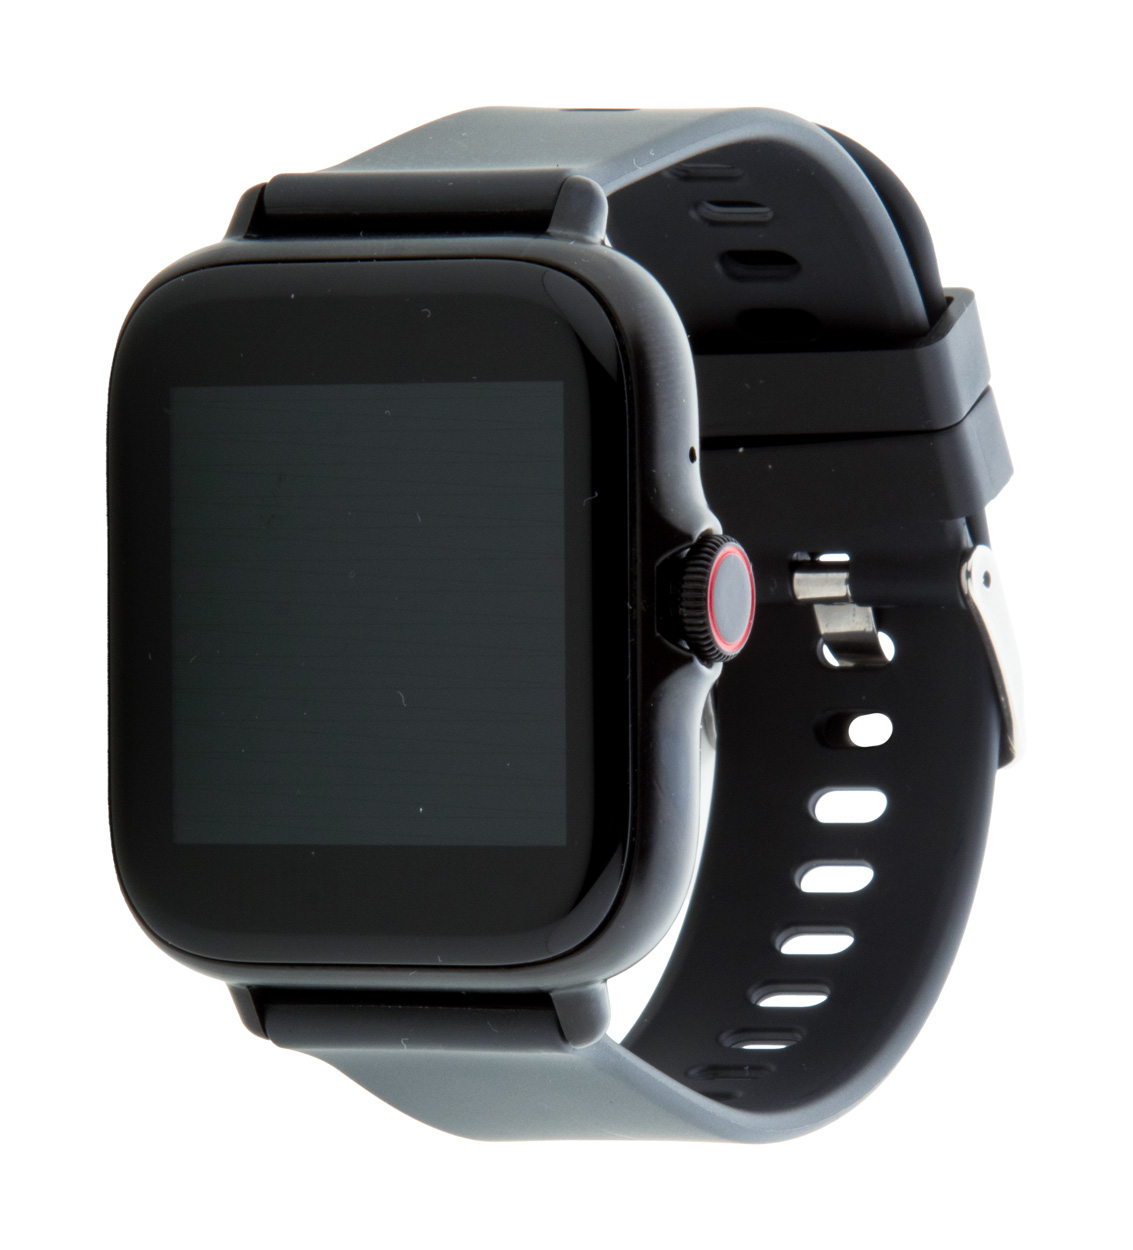 Cortland smart watch - black